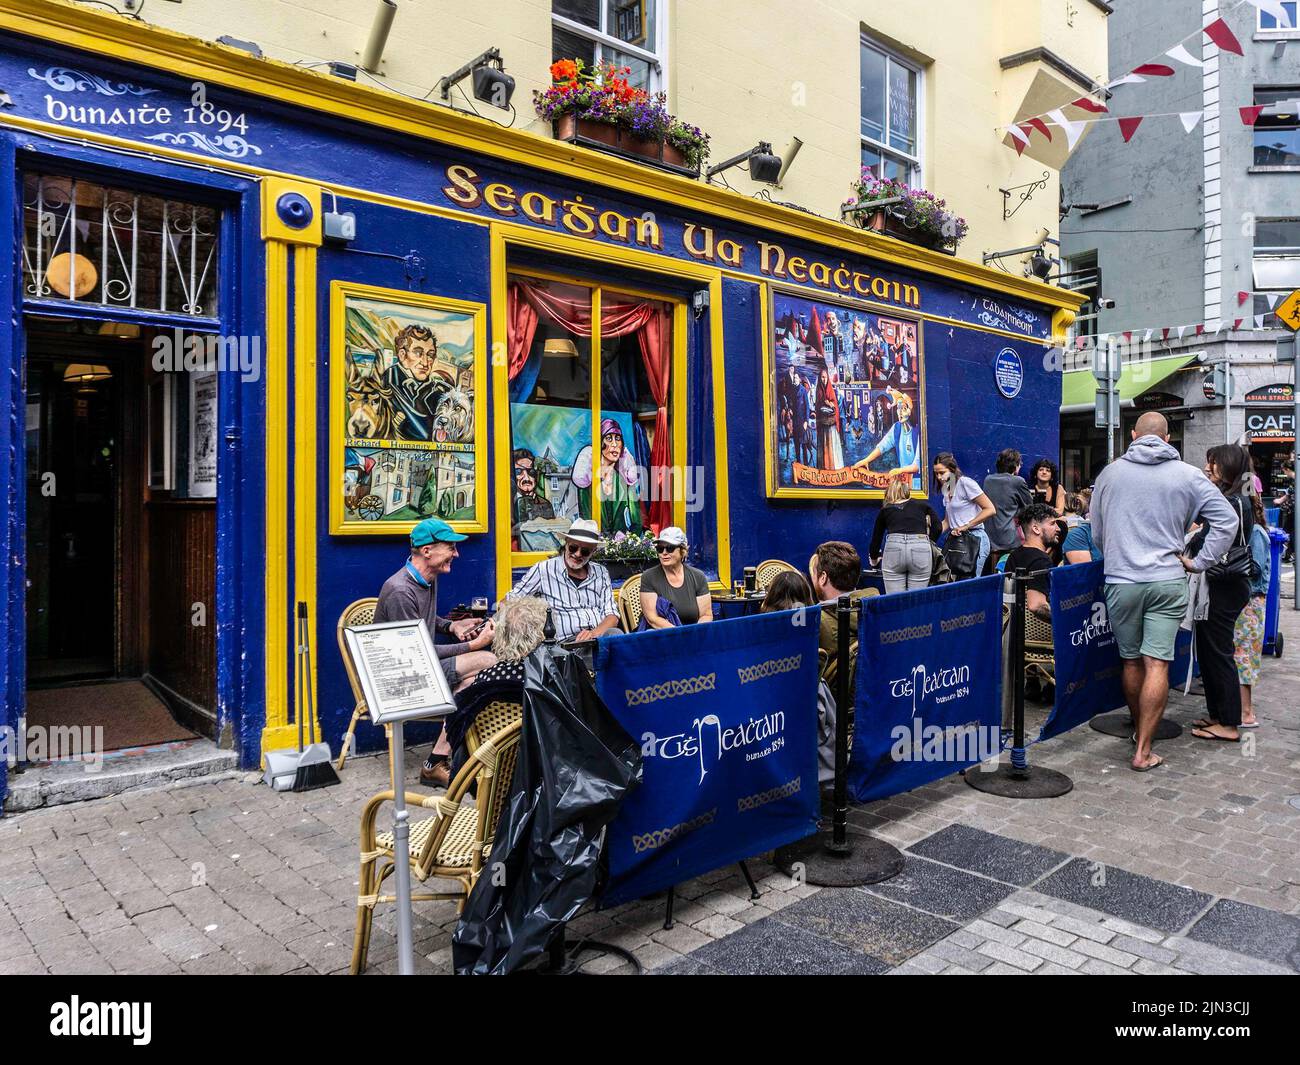 Menschen, die außerhalb von Seaghan UA Neachtain in Galway, Irland, speisen. Ein öffentliches Haus seit 1894. Serviert Mittagessen und Pub-Gerichte. Stockfoto